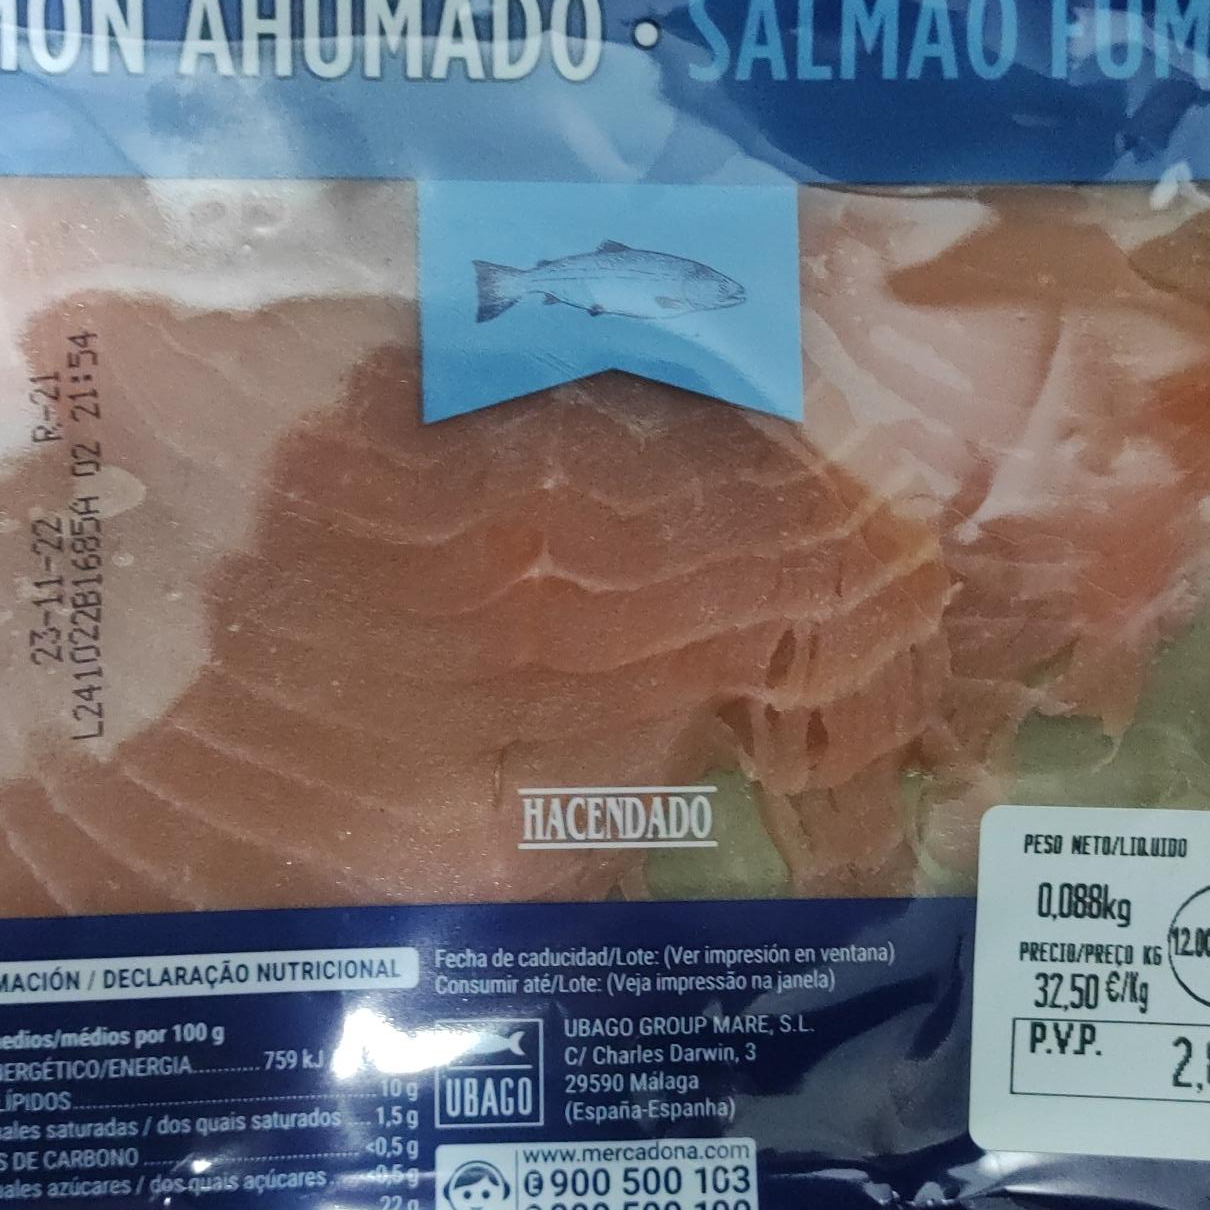 Фото - Риба червона Salmon Ahumado Hacendado